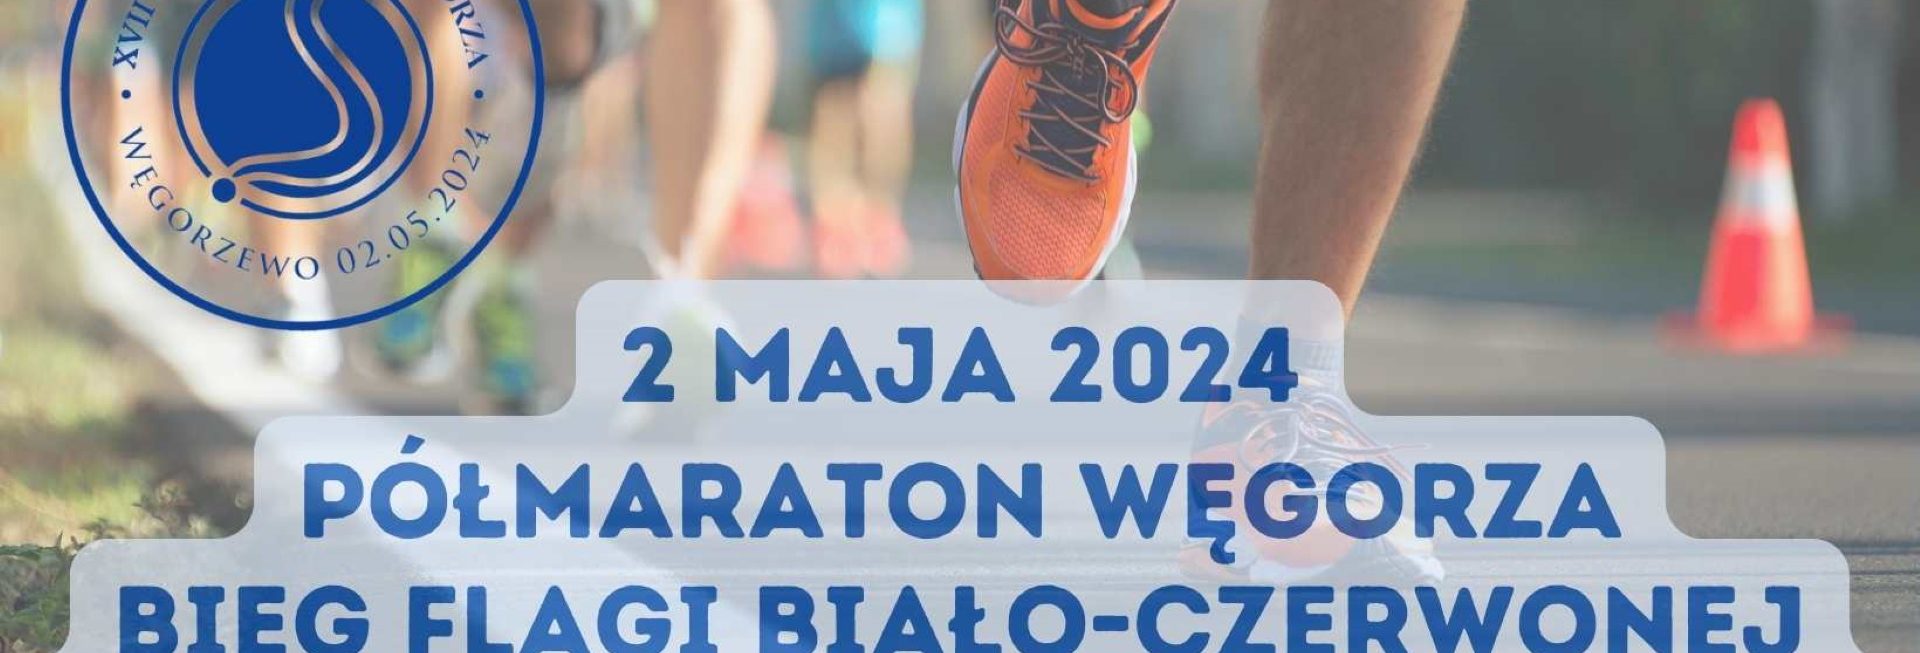 Plakat zapraszający 2 maja 2024 r. do Węgorzewa na Półmaraton Węgorza & IV Bieg Flagi Biało-Czerwonej Węgorzewo 2024. 